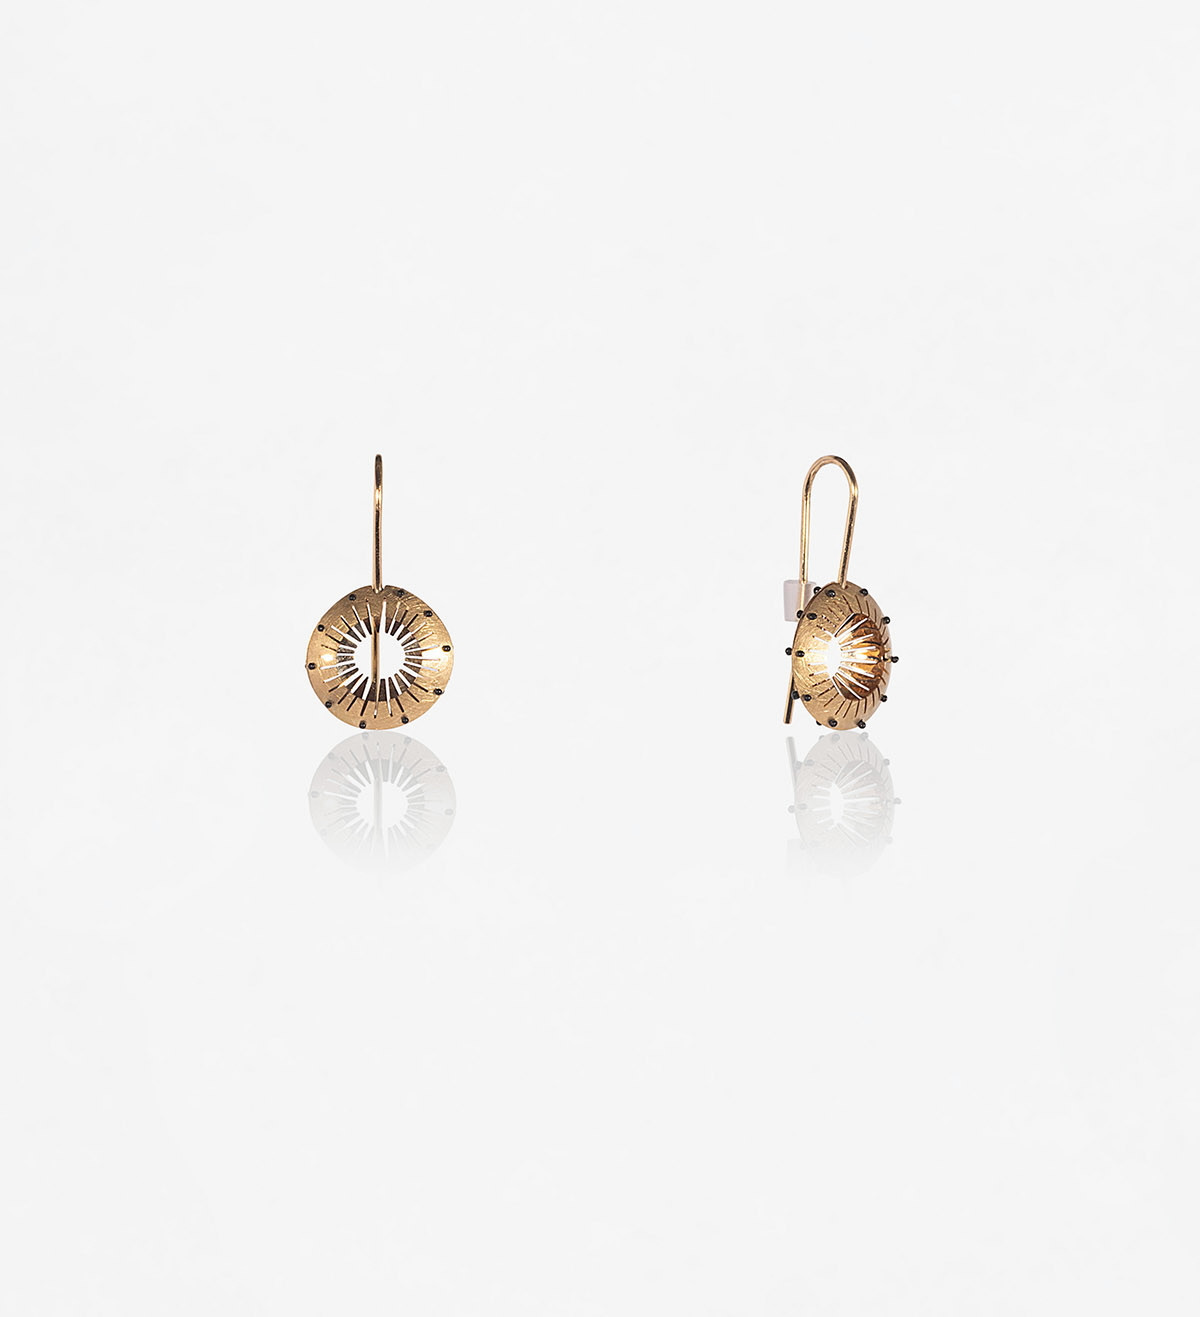 18k gold earrings Tresor 15mm